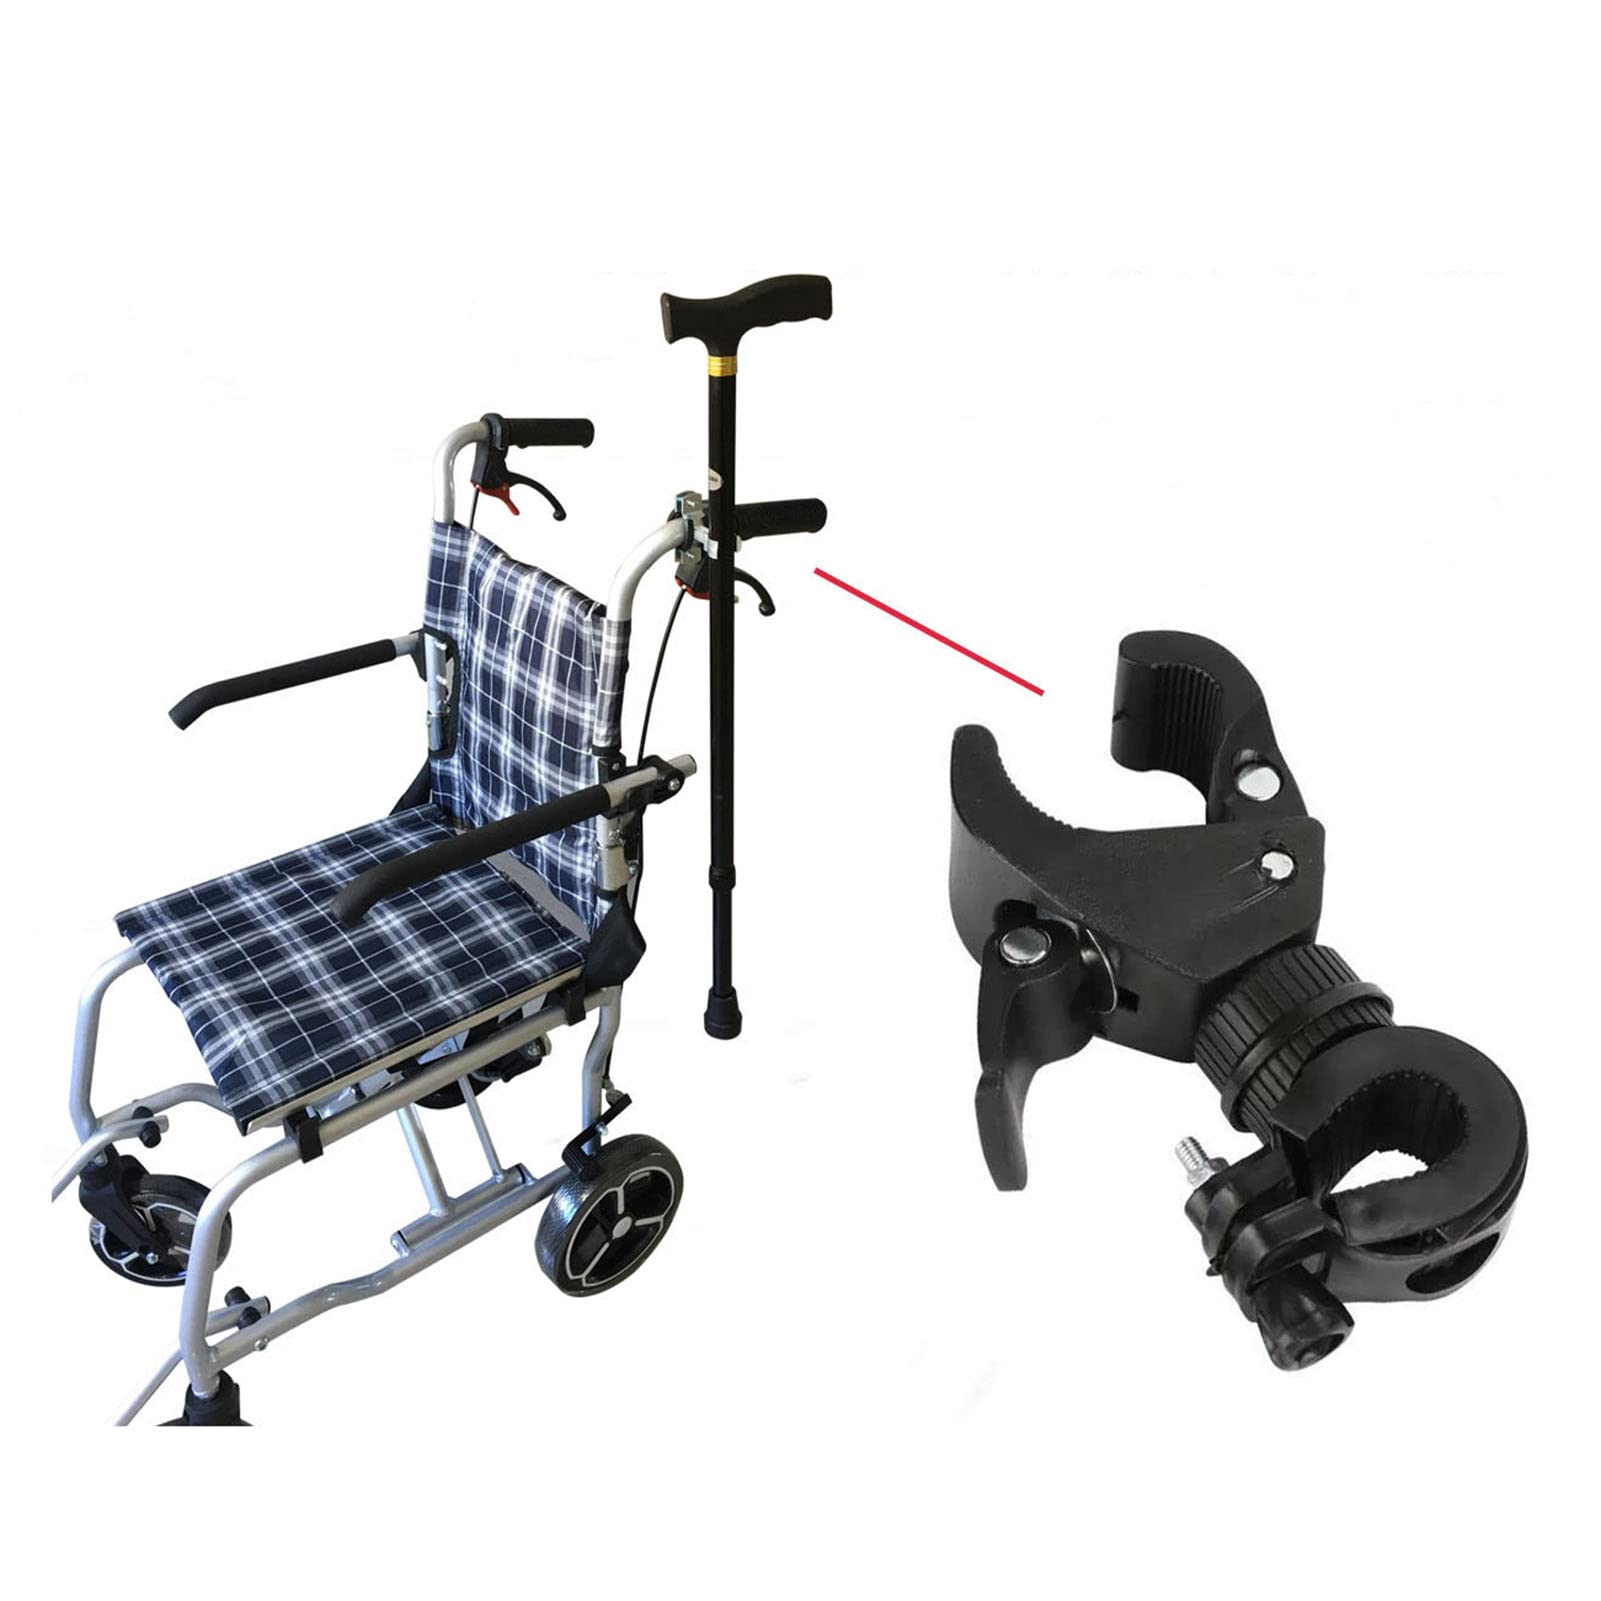 WANGXN Stockhalter für Rollstuhl, praktischer Stockhalter, Rollstuhl zubehör, Mehrzweck Krückenhalter für Rollstuhl, Halterung für Krücke Holder Universal Electric Scooter Accessory, Schwarz